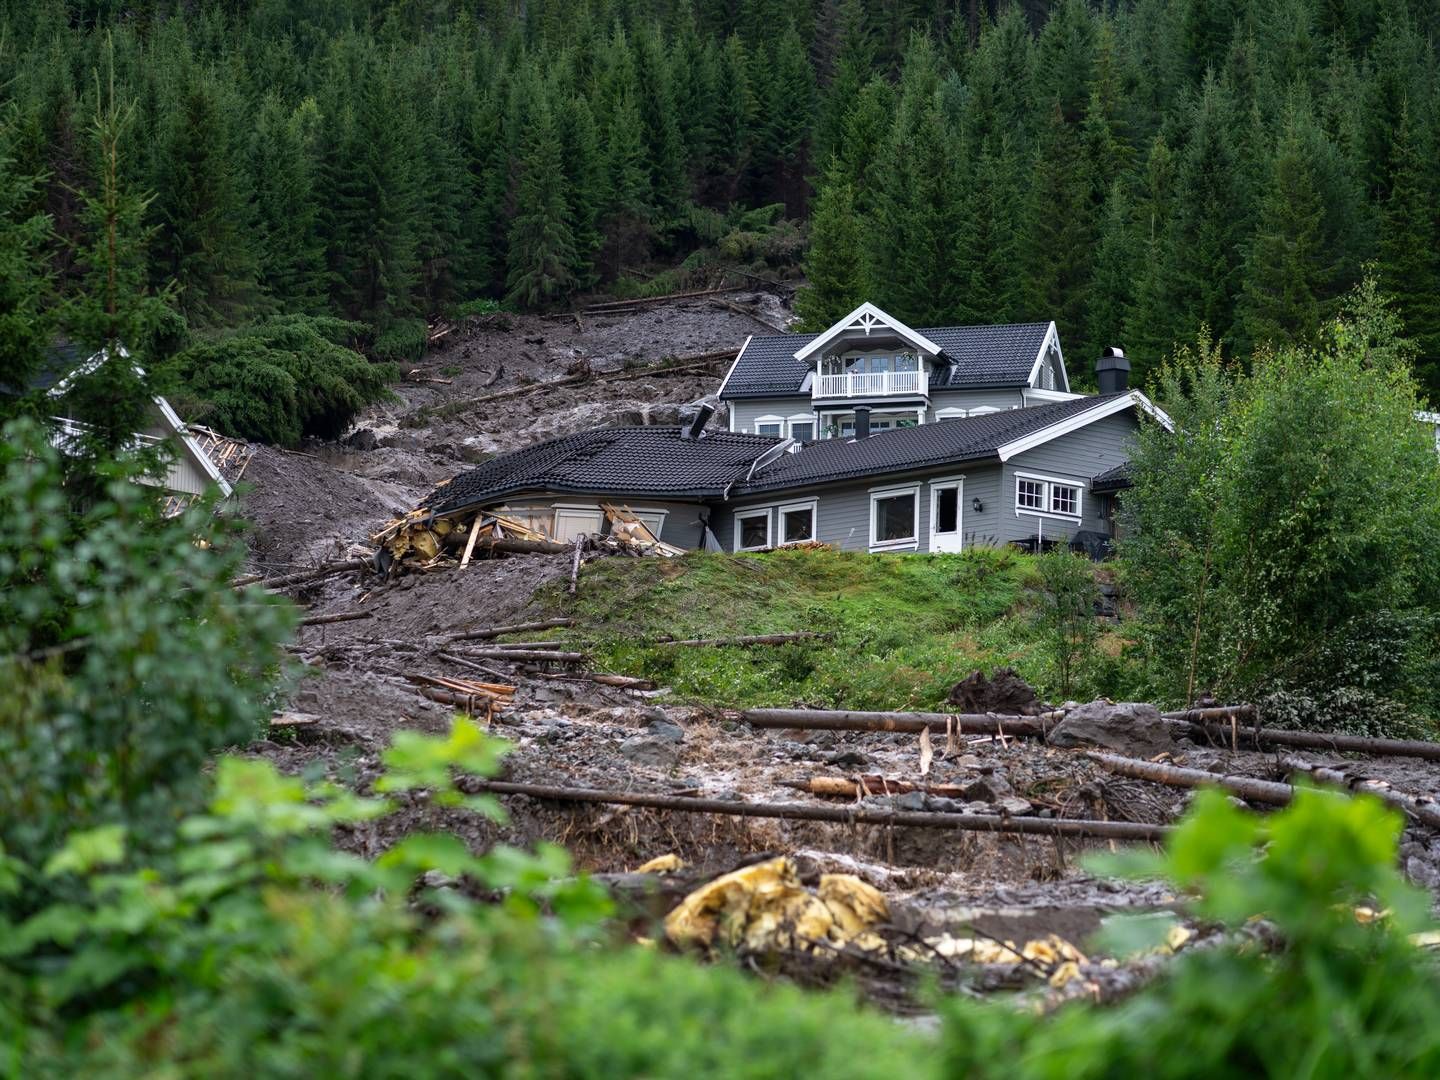 Flere hus er tatt av et skred som har gått gjennom et boligområde i Bagn i Valdres. Ekremværet Hans har ført til flere skred og stor vannføring i elver og vassdrag. | Foto: Cornelius Poppe / NTB